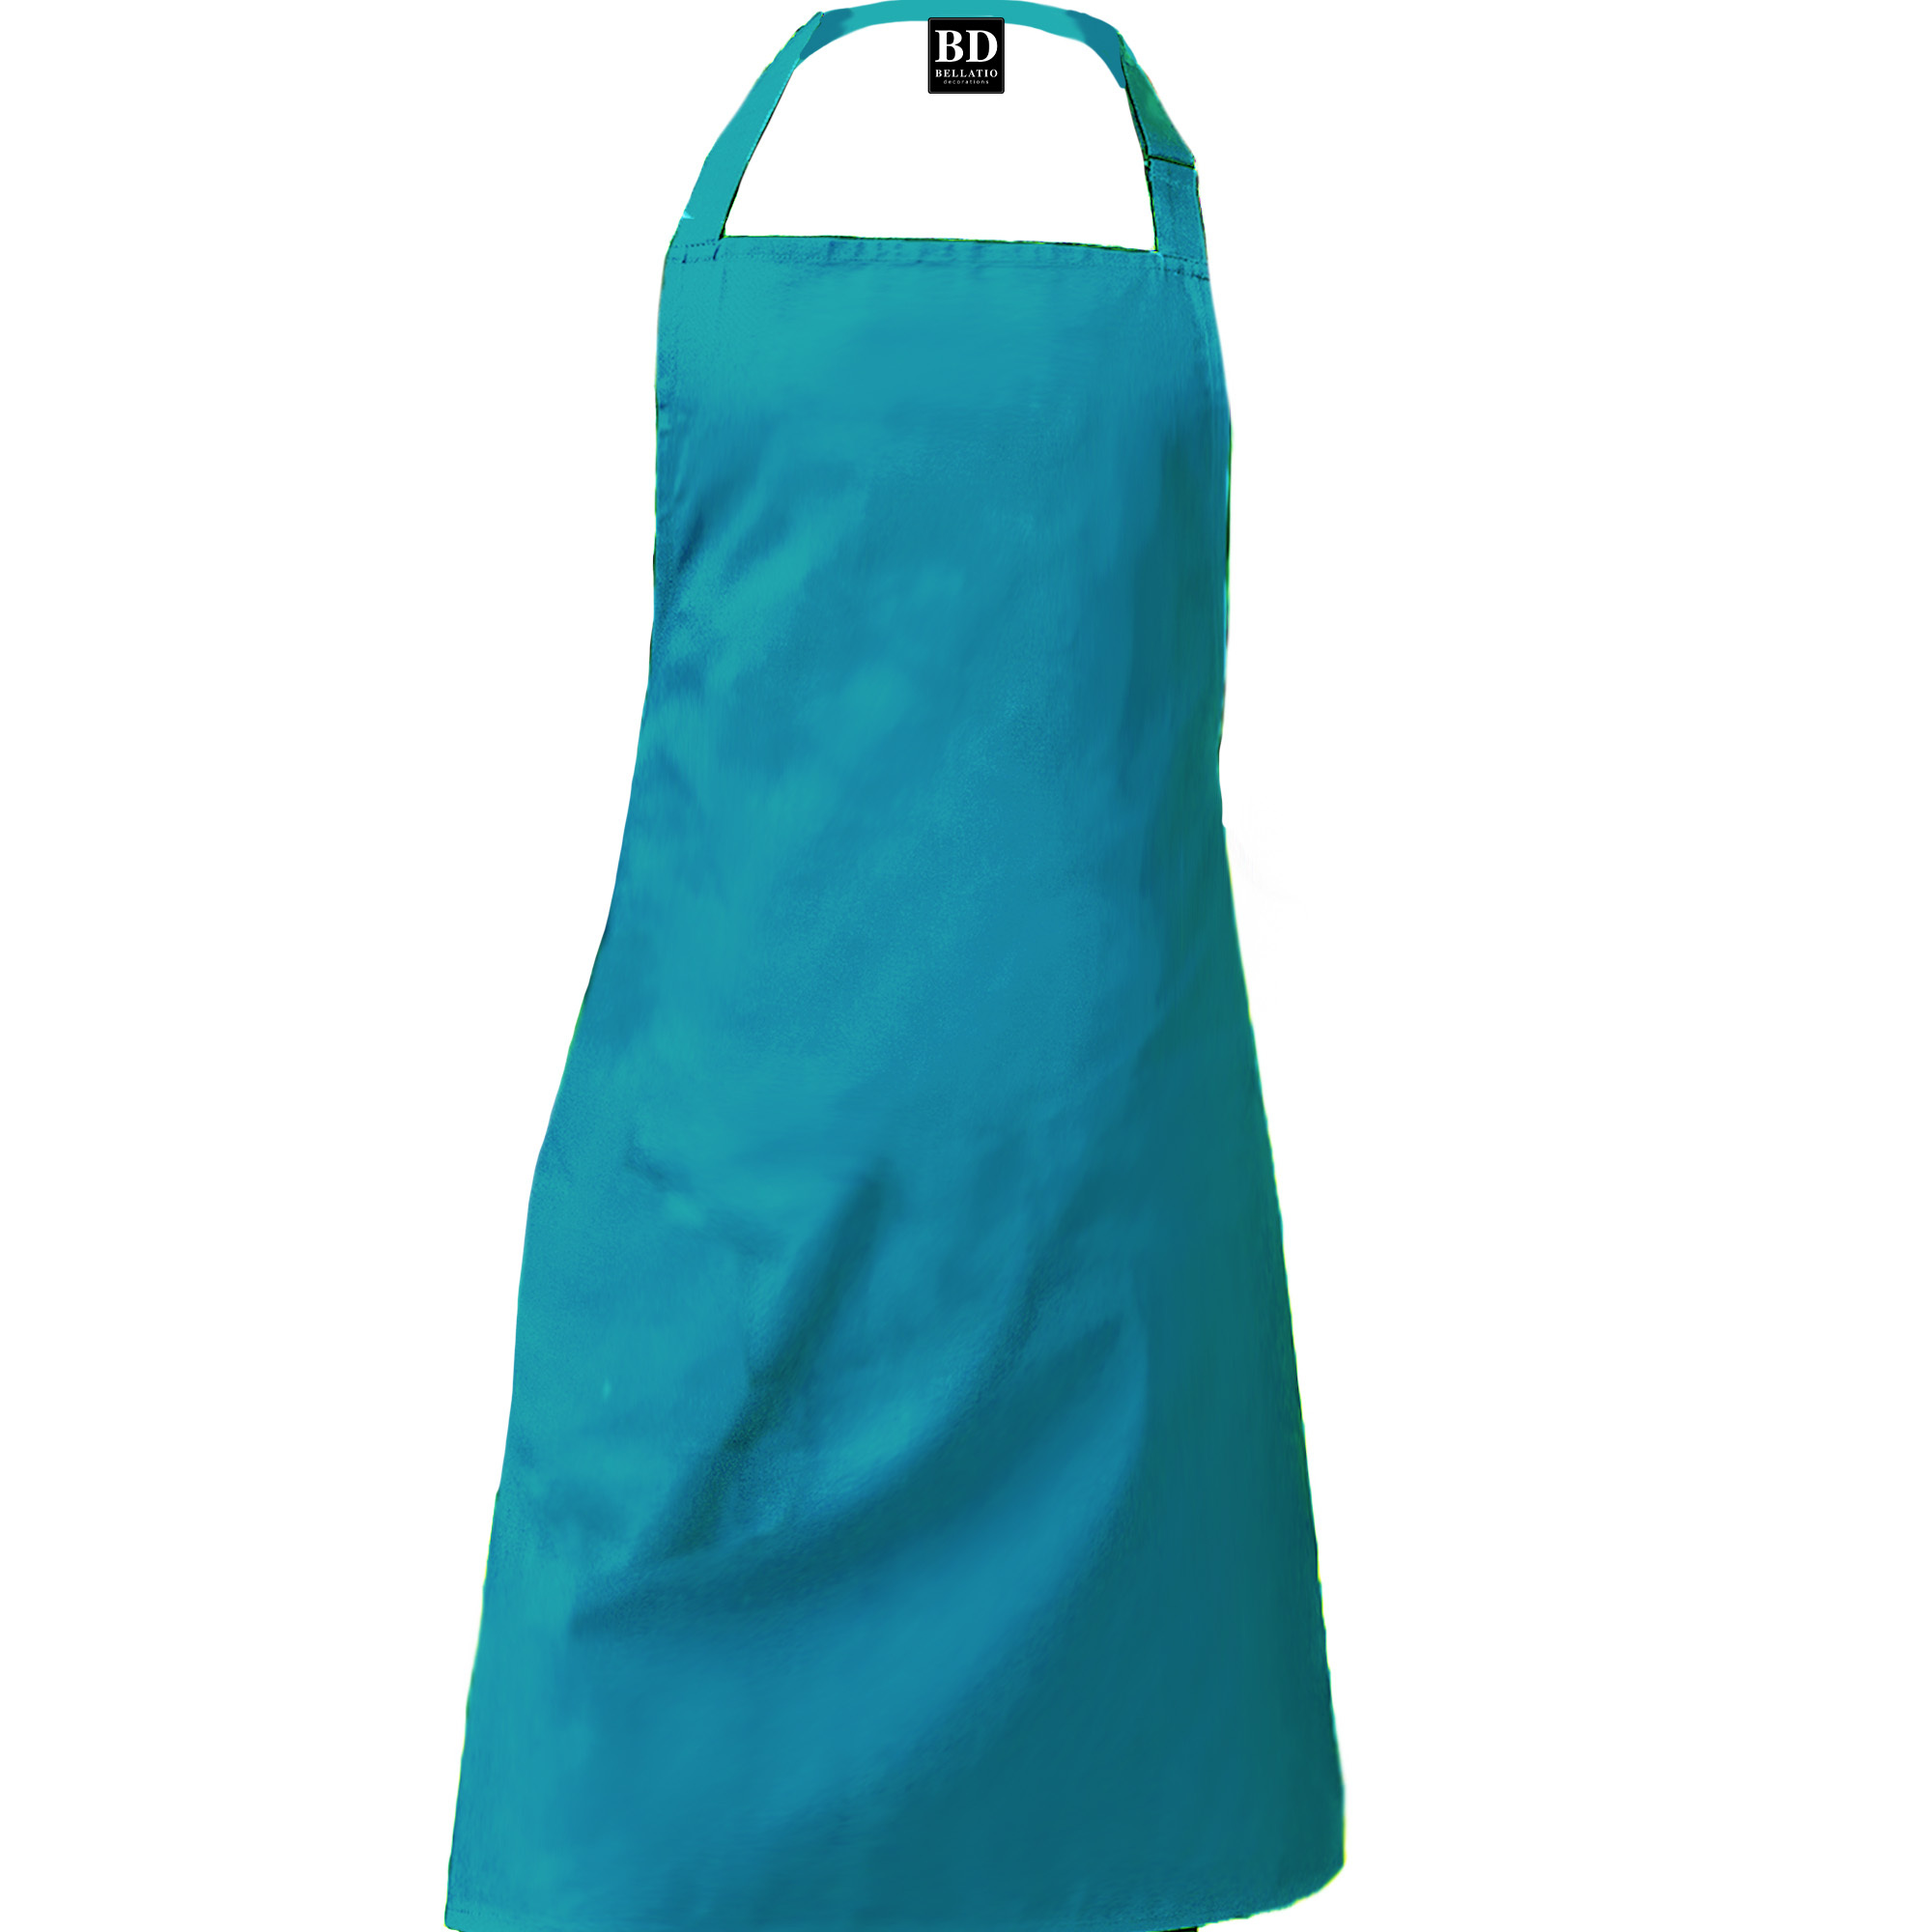 Master chef barbeque schort / keukenschort turquoise blauw heren